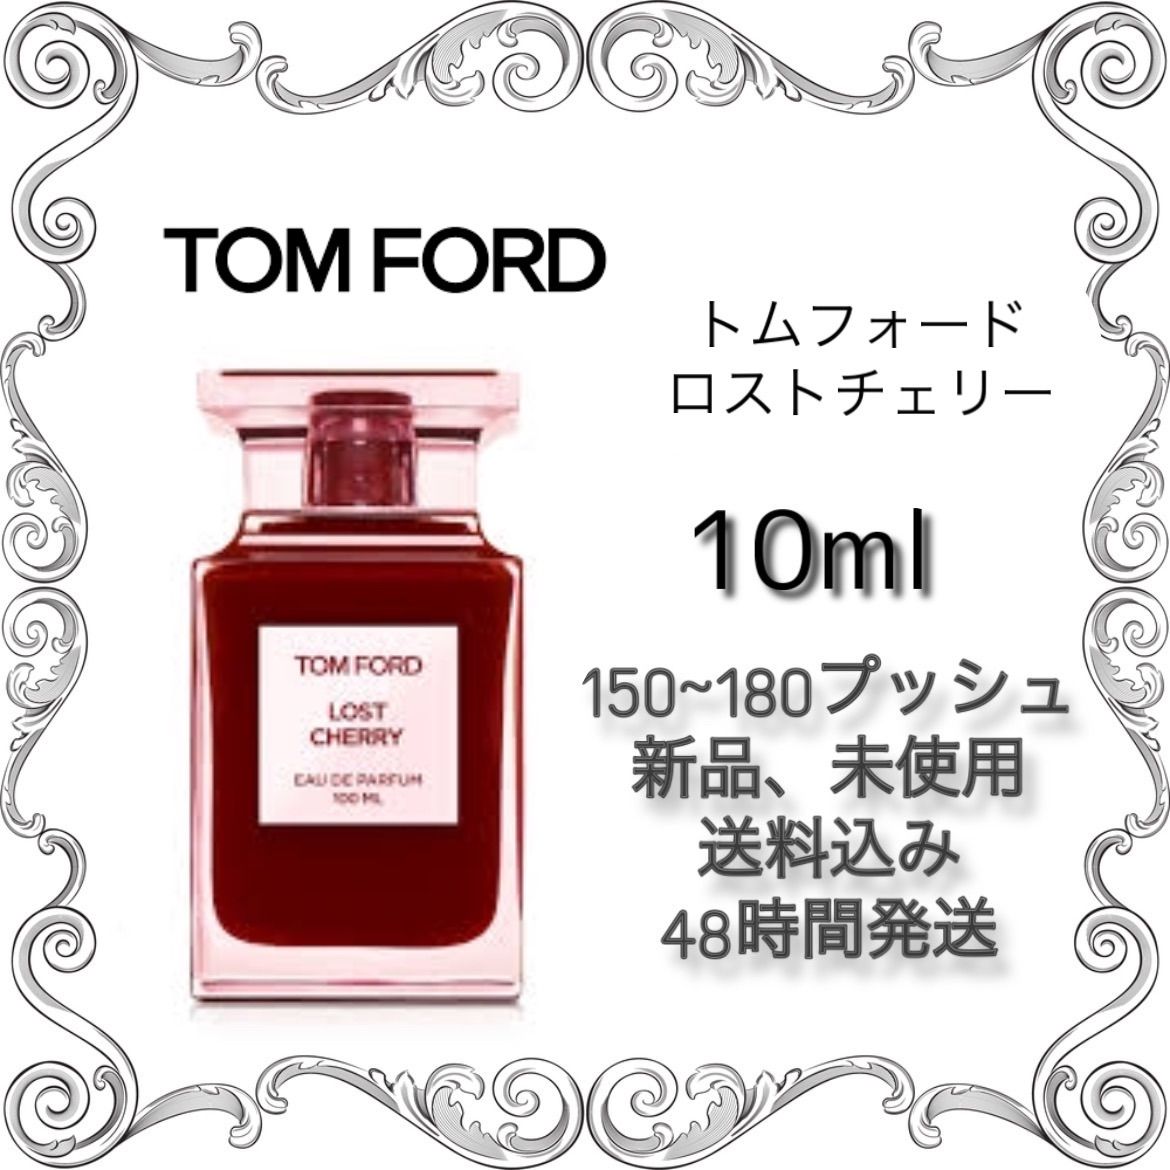 大人気 トムフォード香水 ロストチェリー オードパルファム 100ml ロスト 香水